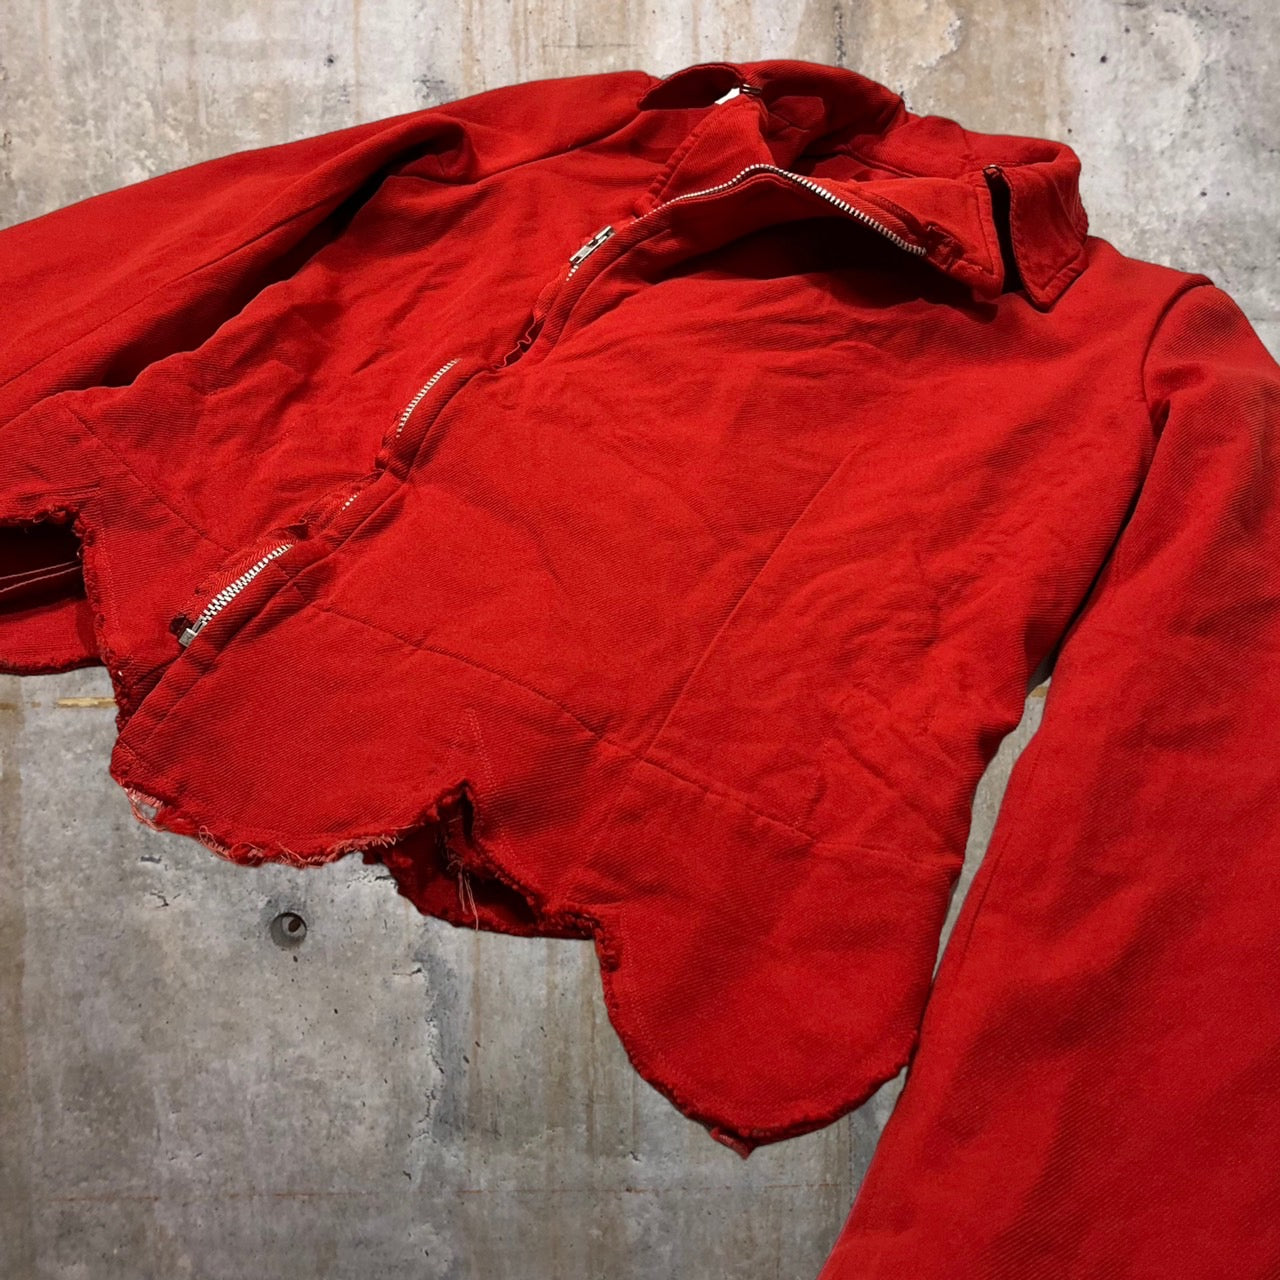 robe de chambre COMME des GARCONS(ローブドシャンブルコムデギャルソン) 04SS Poly fulling W riders jacket/ポリ縮絨ダブルライダースジャケット/ヴィンテージ/00s RM-J005 M レッド AD2003